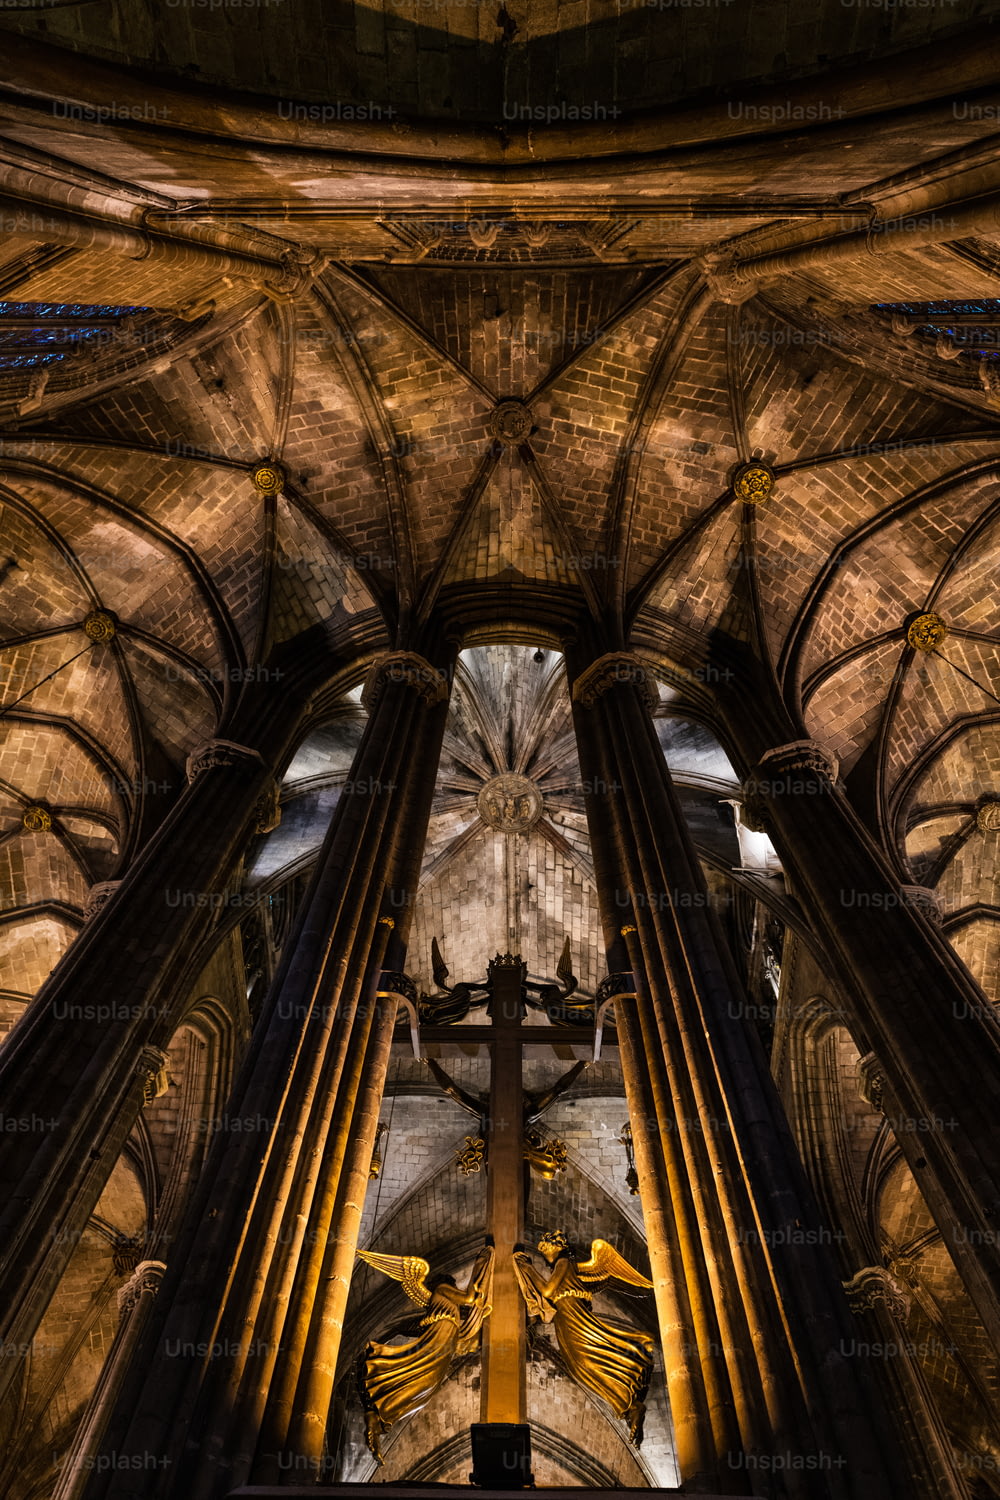 Vue intérieure de la cathédrale gothique de Barcelone, également connue sous le nom de La Seu, située au cœur du quartier gothique de Barcelone.